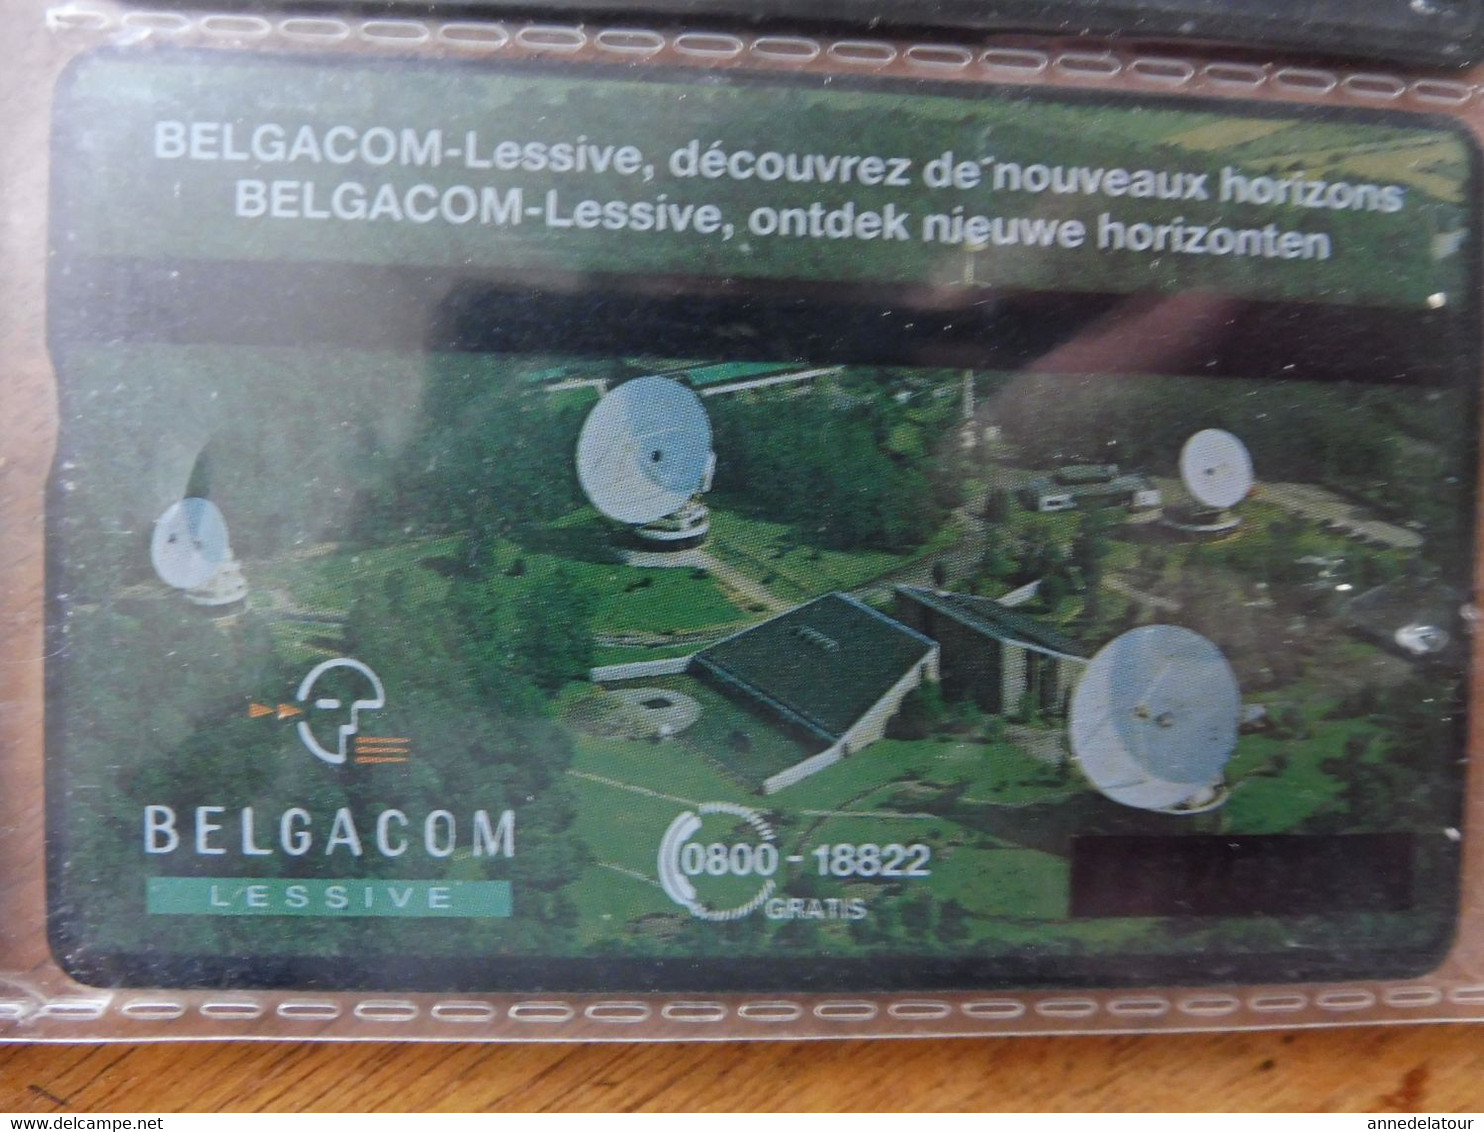 10 télécartes (cartes téléphoniques)  BELGACOM (publicité ,dessin animé, Rossini, Grotte de Han, Expo, etc )  Belgique